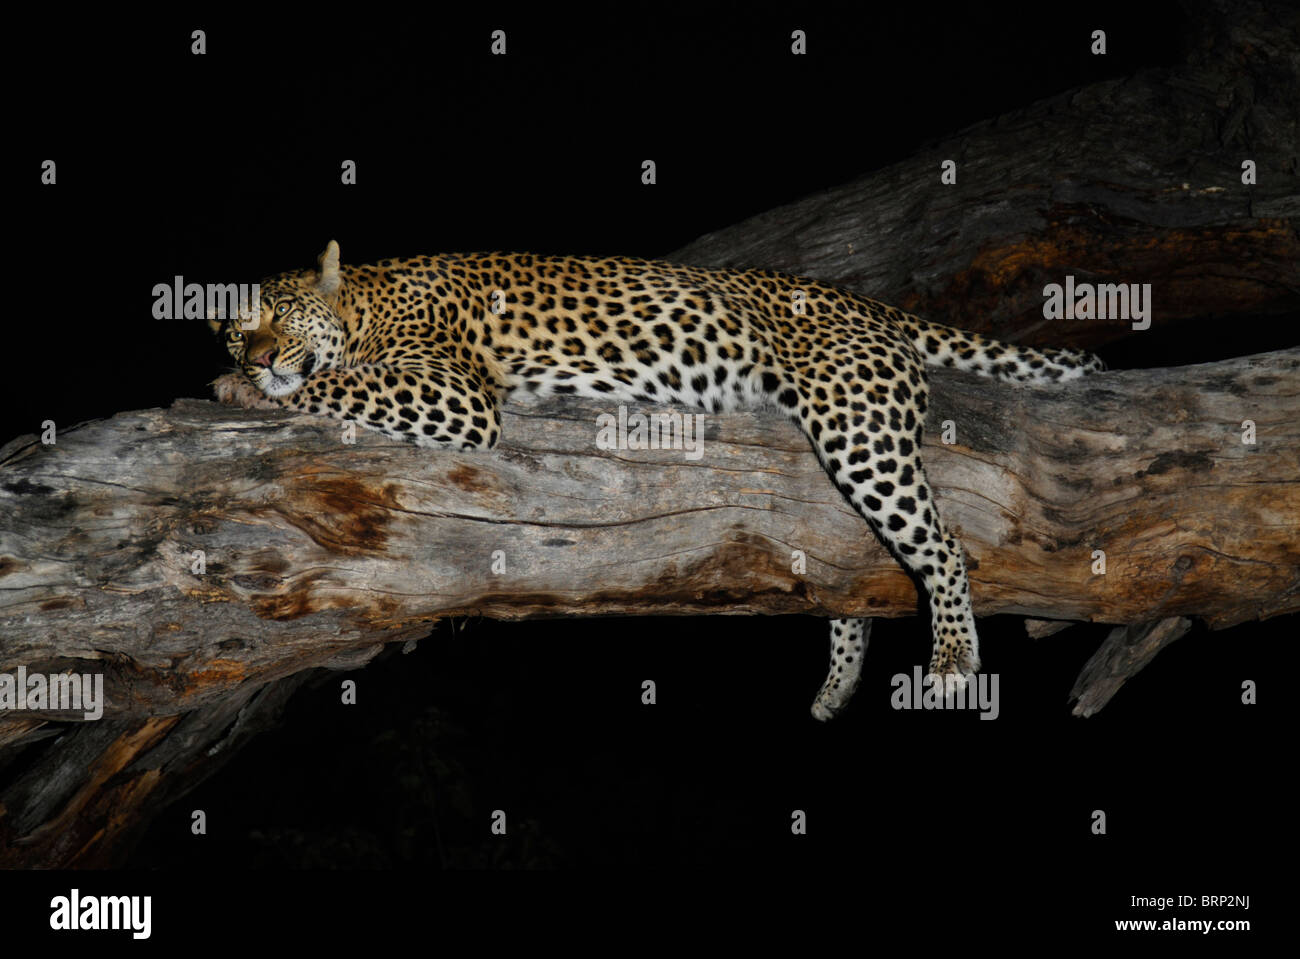 Dormir Leopard en un registro caídos durante la noche Foto de stock